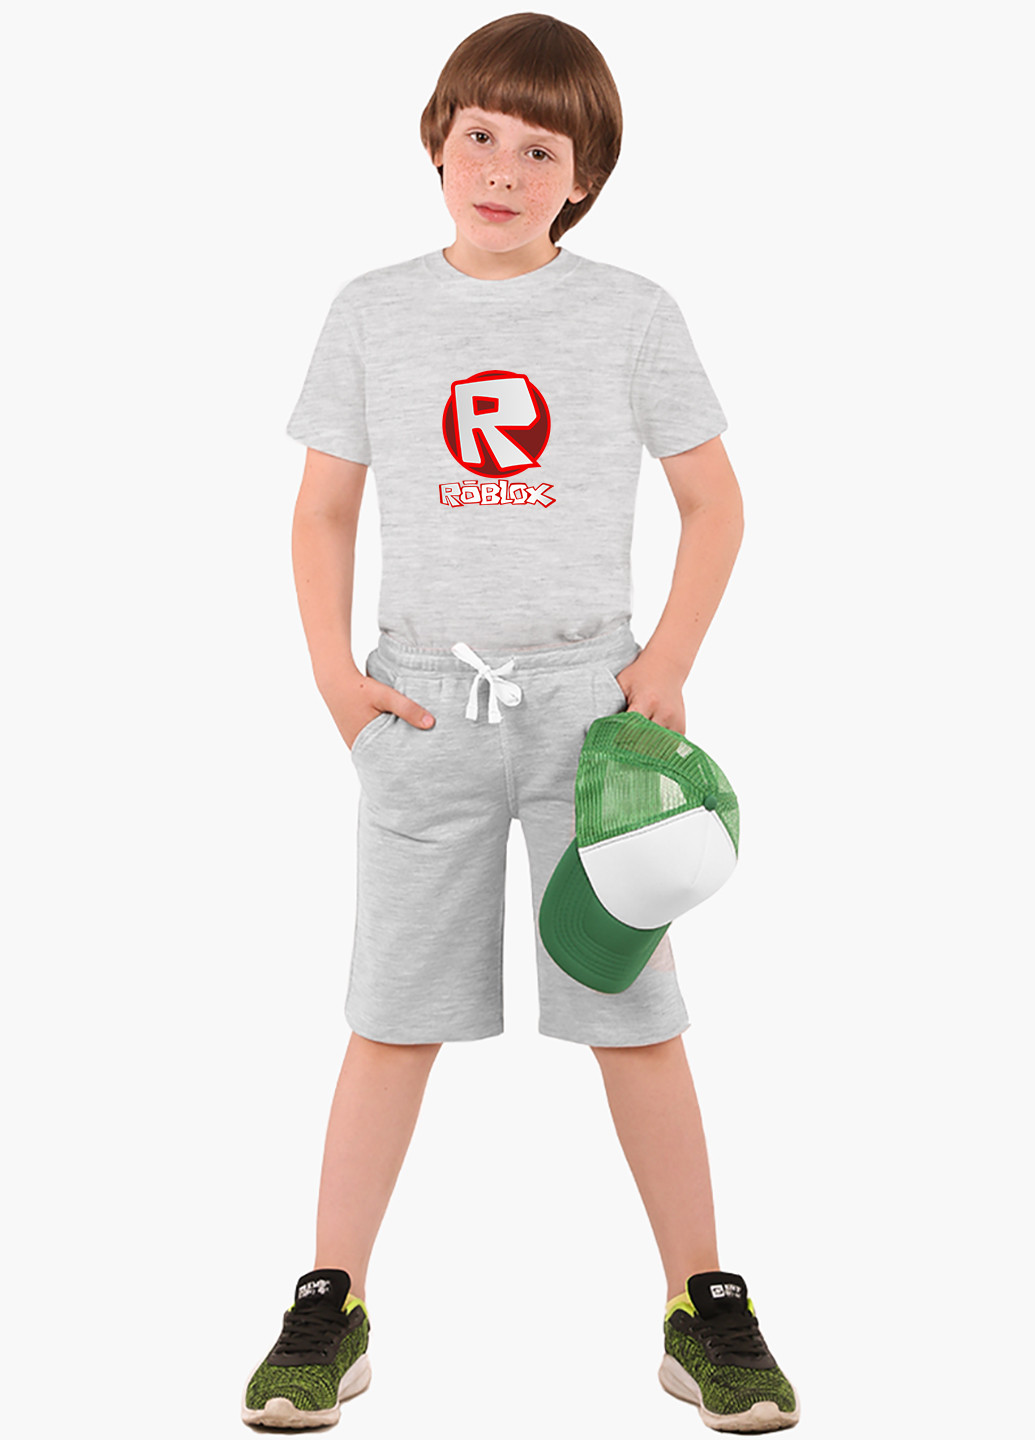 Світло-сіра демісезонна футболка дитяча роблокс (roblox) (9224-1708) MobiPrint